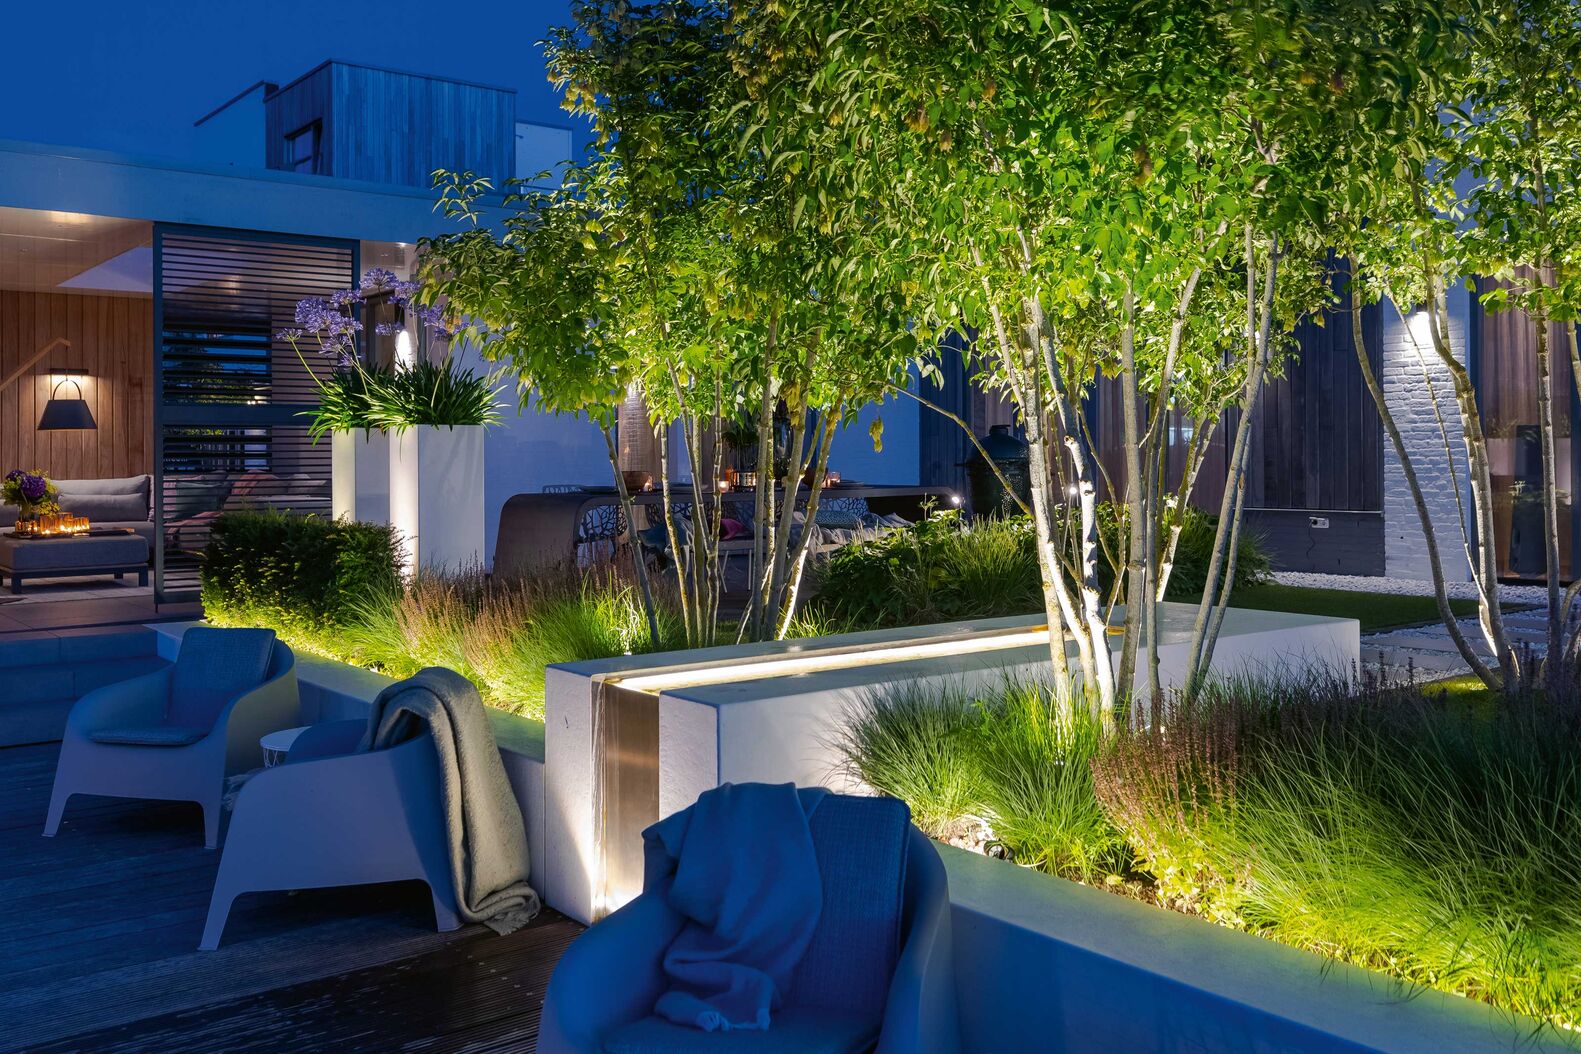 Mit Strahlern an der Wand und unterhalb von Büschen und Bäumen lässt sich der Aussenbereich effektvoll illuminieren. Green Style.